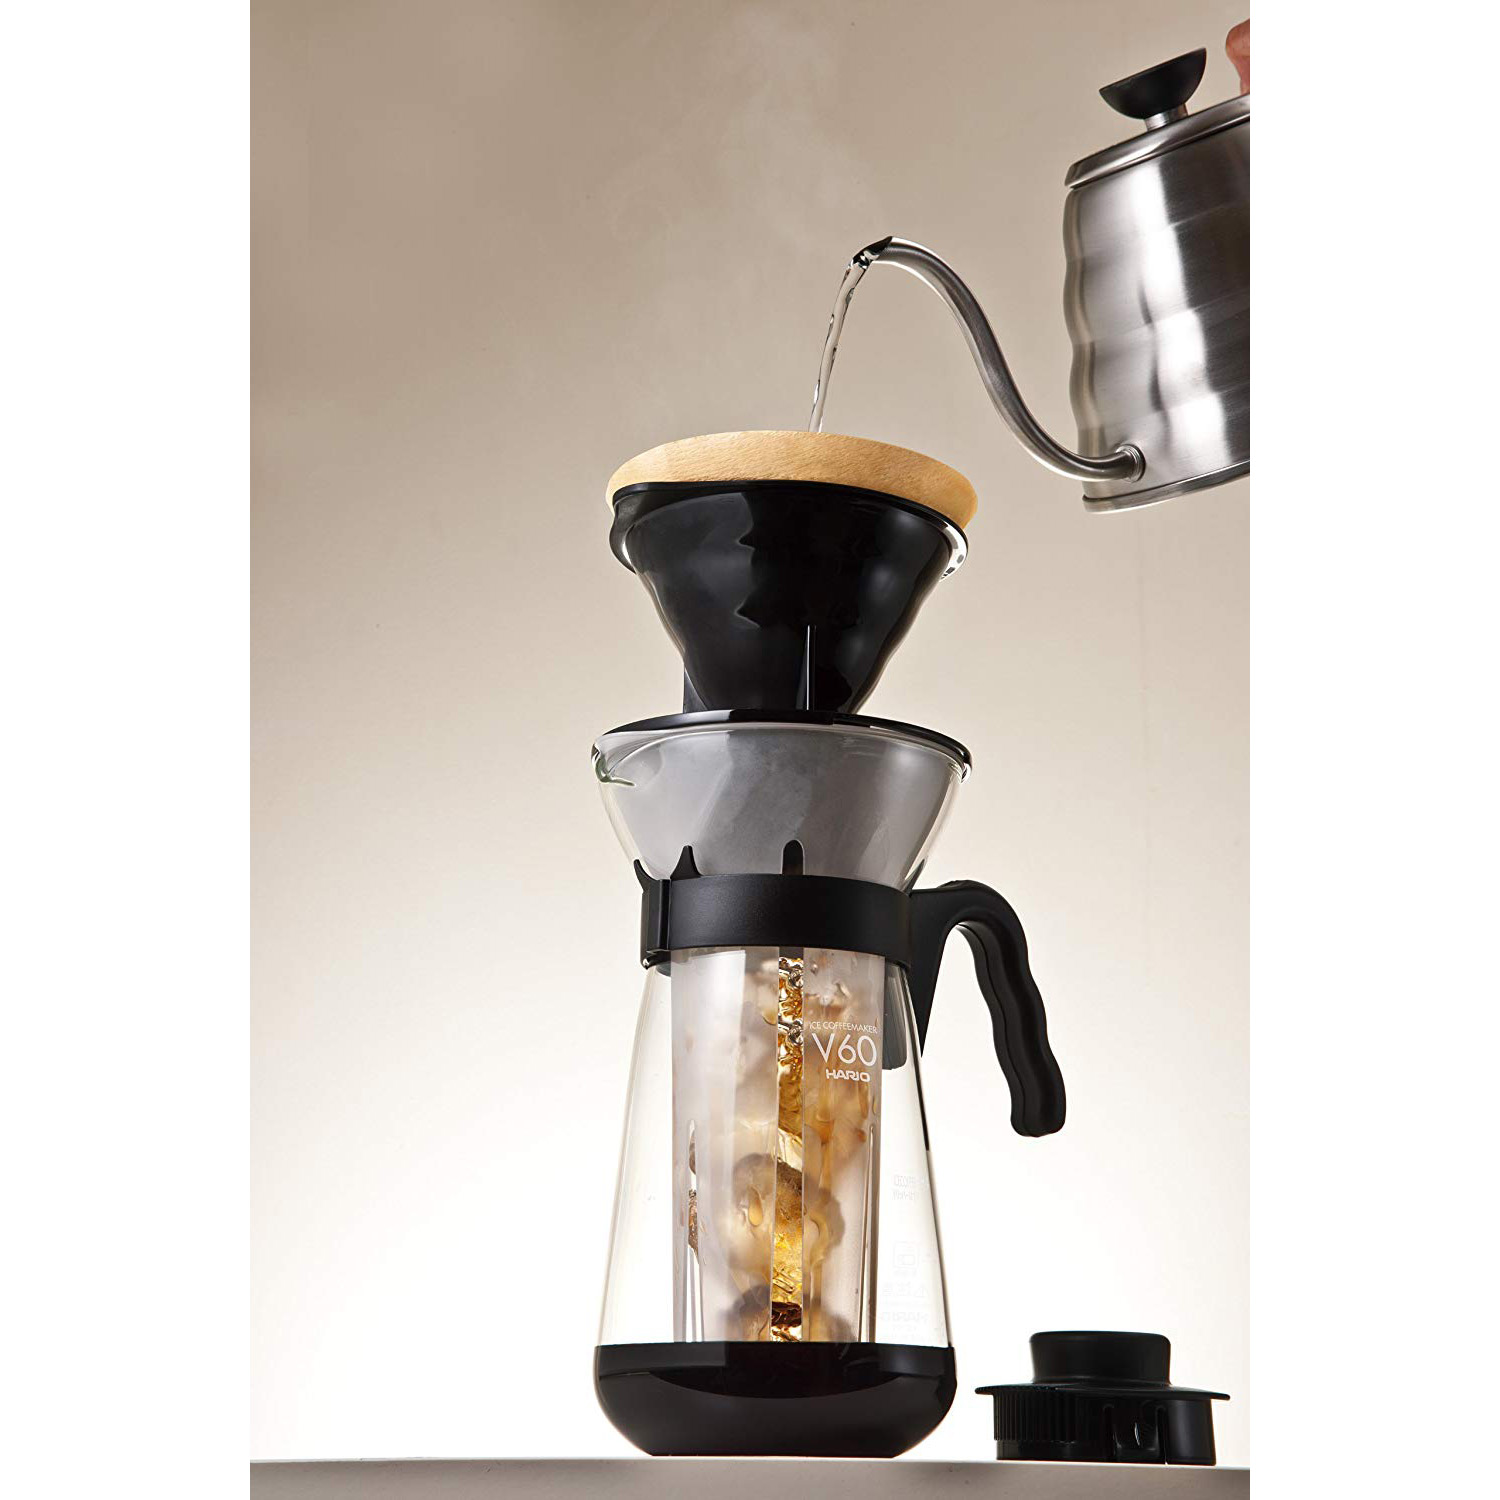 Bình pha cà phê nóng, lạnh Hario V60 2in1 (700ml)